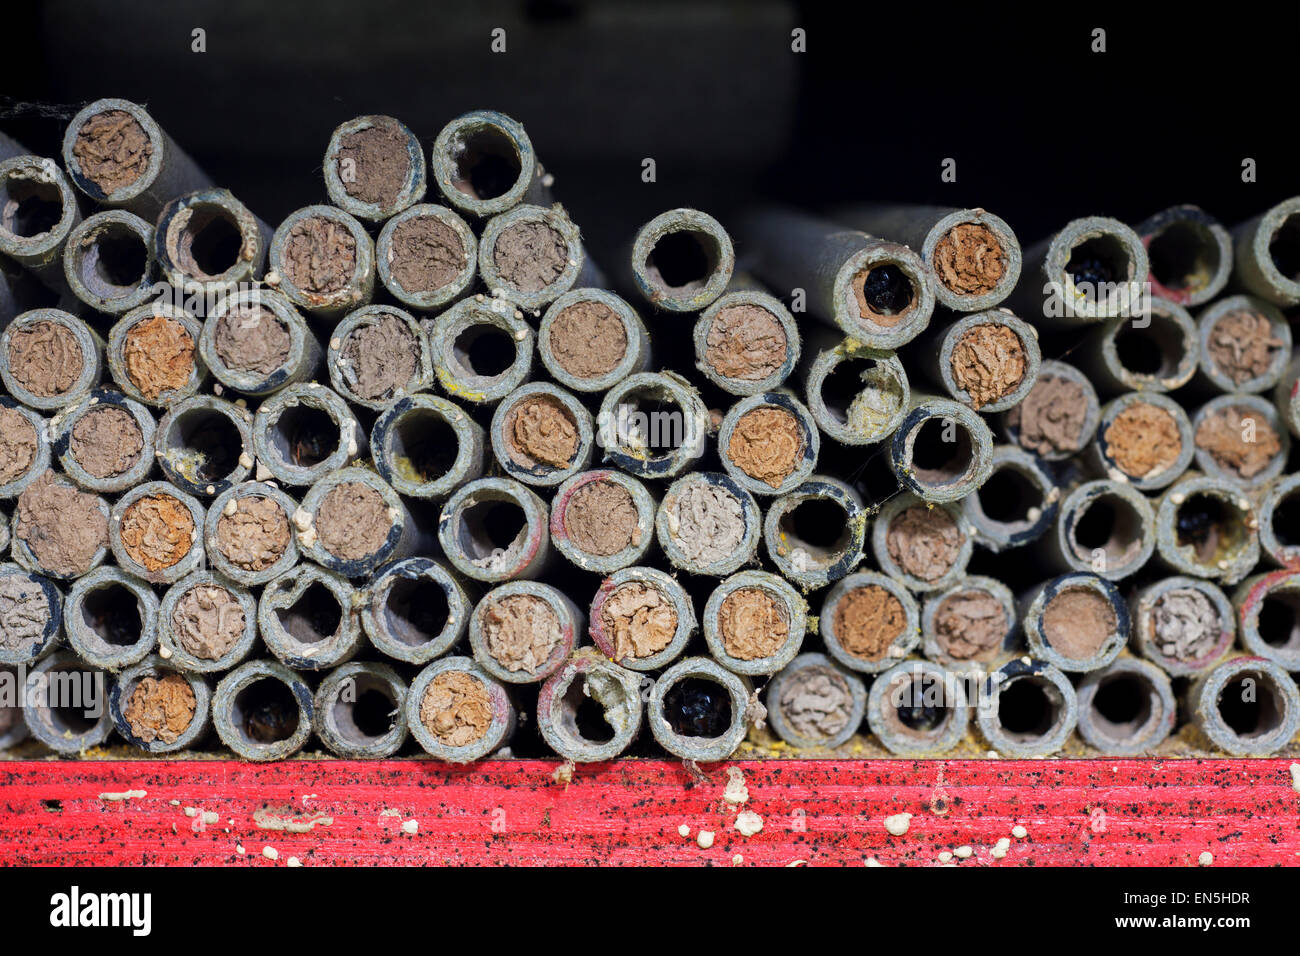 Les cavités de nidification scellées avec de la boue par les abeilles maçonnes / builder bee en tubes creux à l'hôtel pour insectes abeilles solitaires Banque D'Images